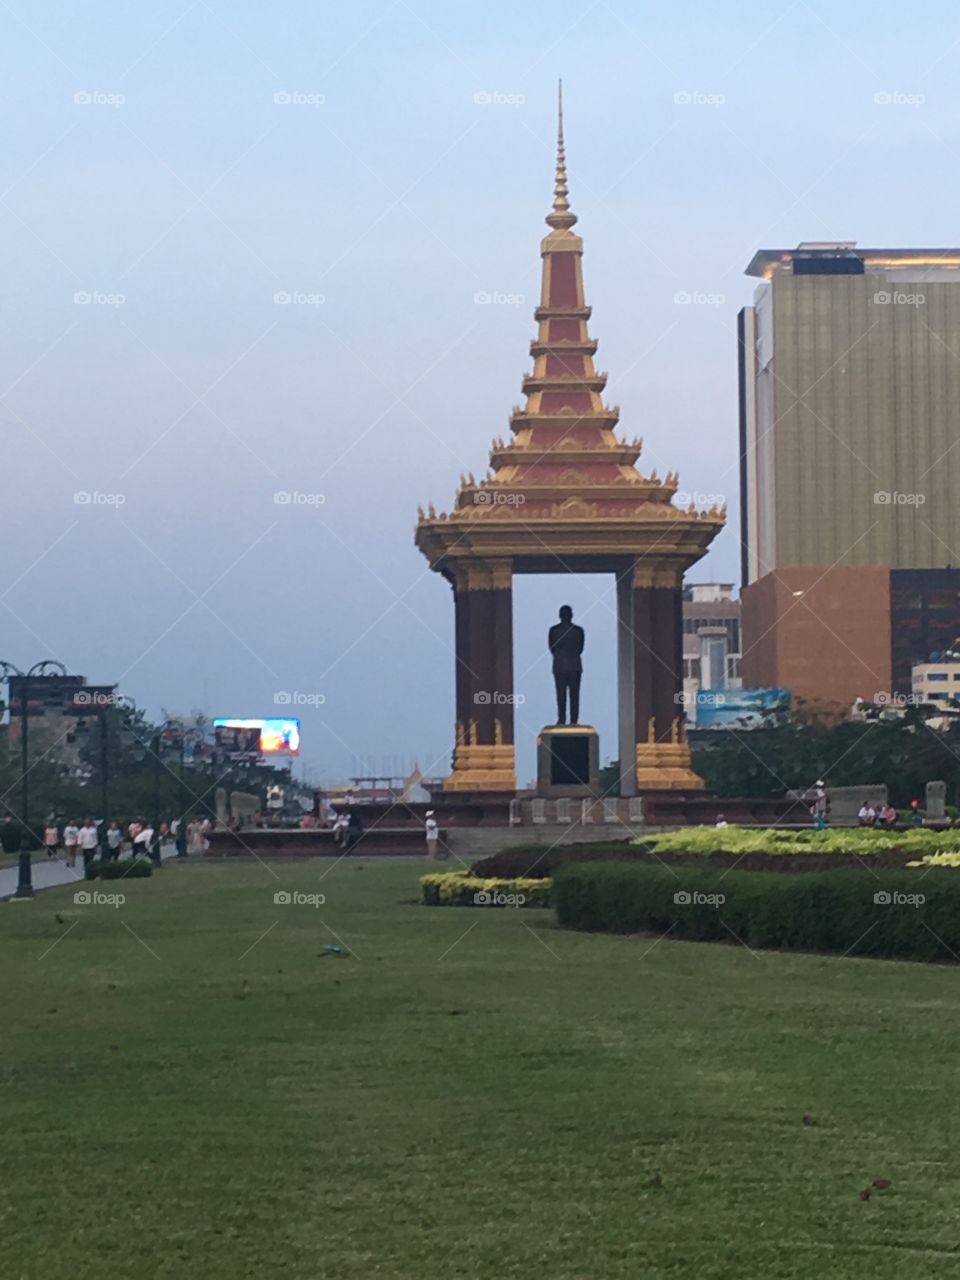 The city square in Cambodia 